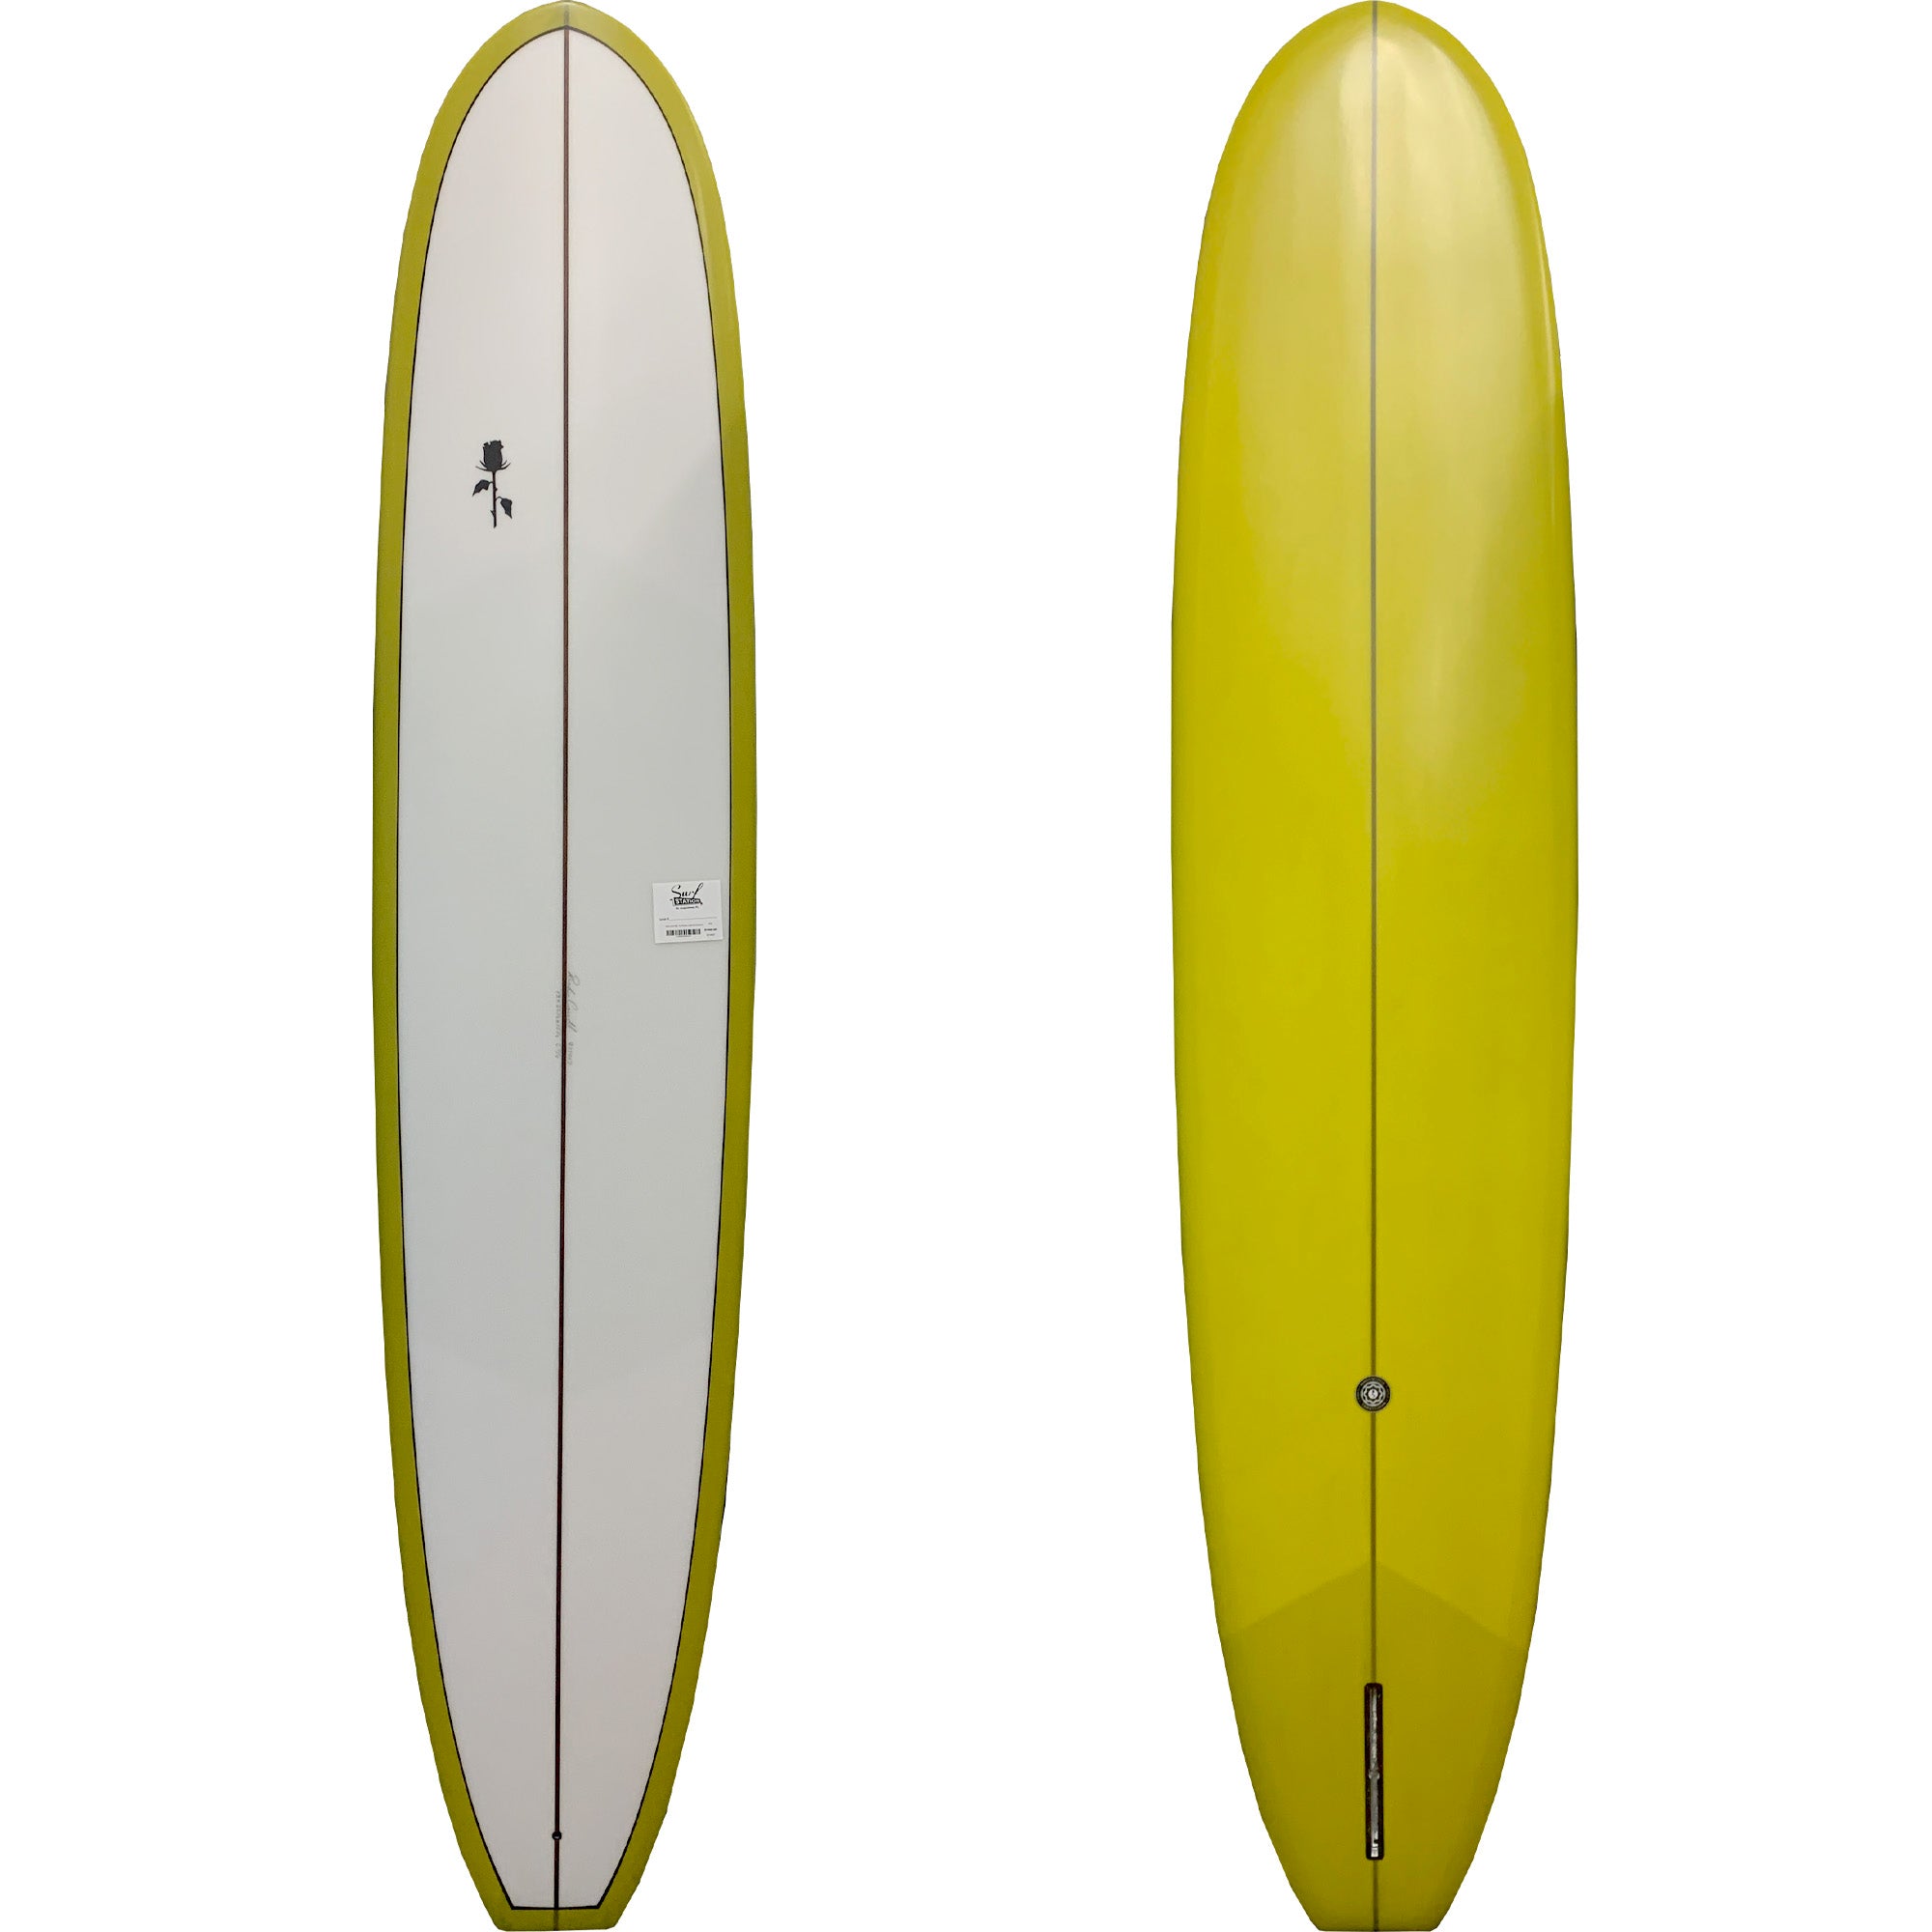 Black Rose Mfg. The Breeze Longboard Surfboard